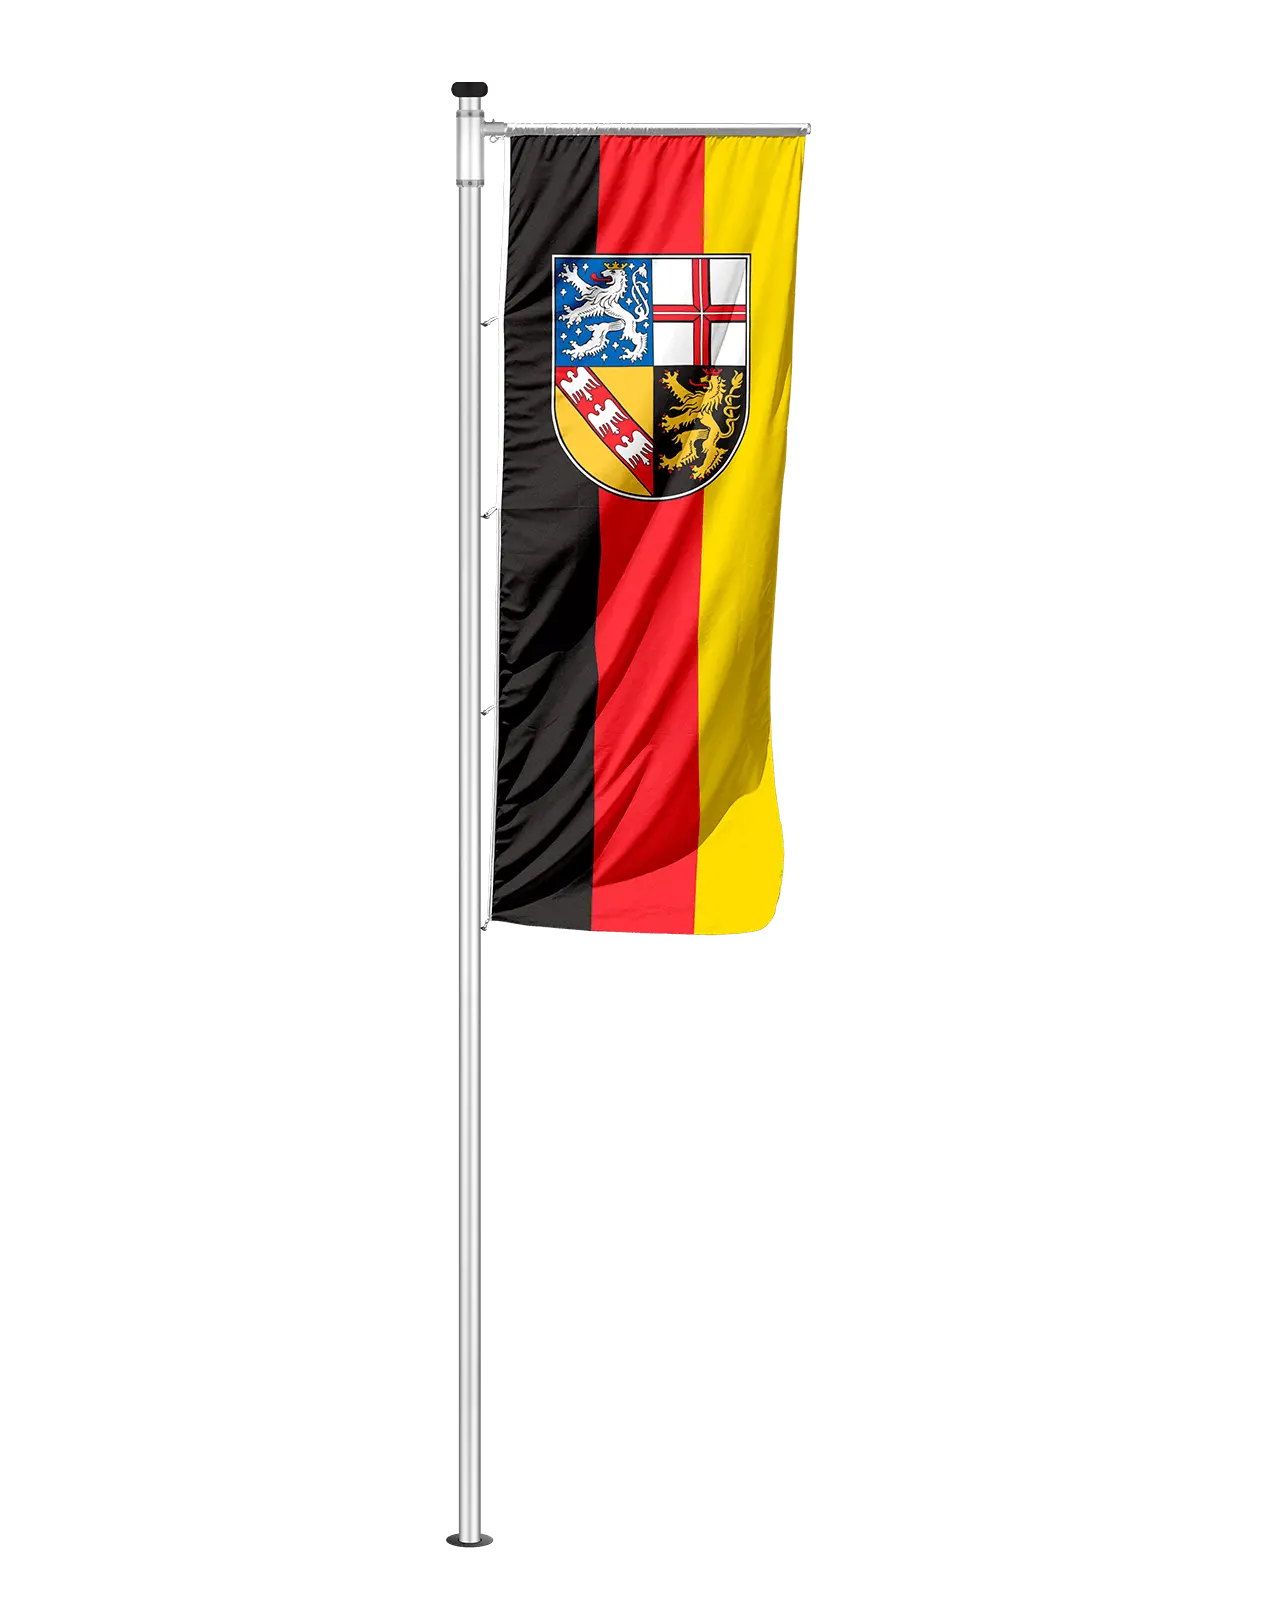 Auslegerfahne Saarland mit Wappen